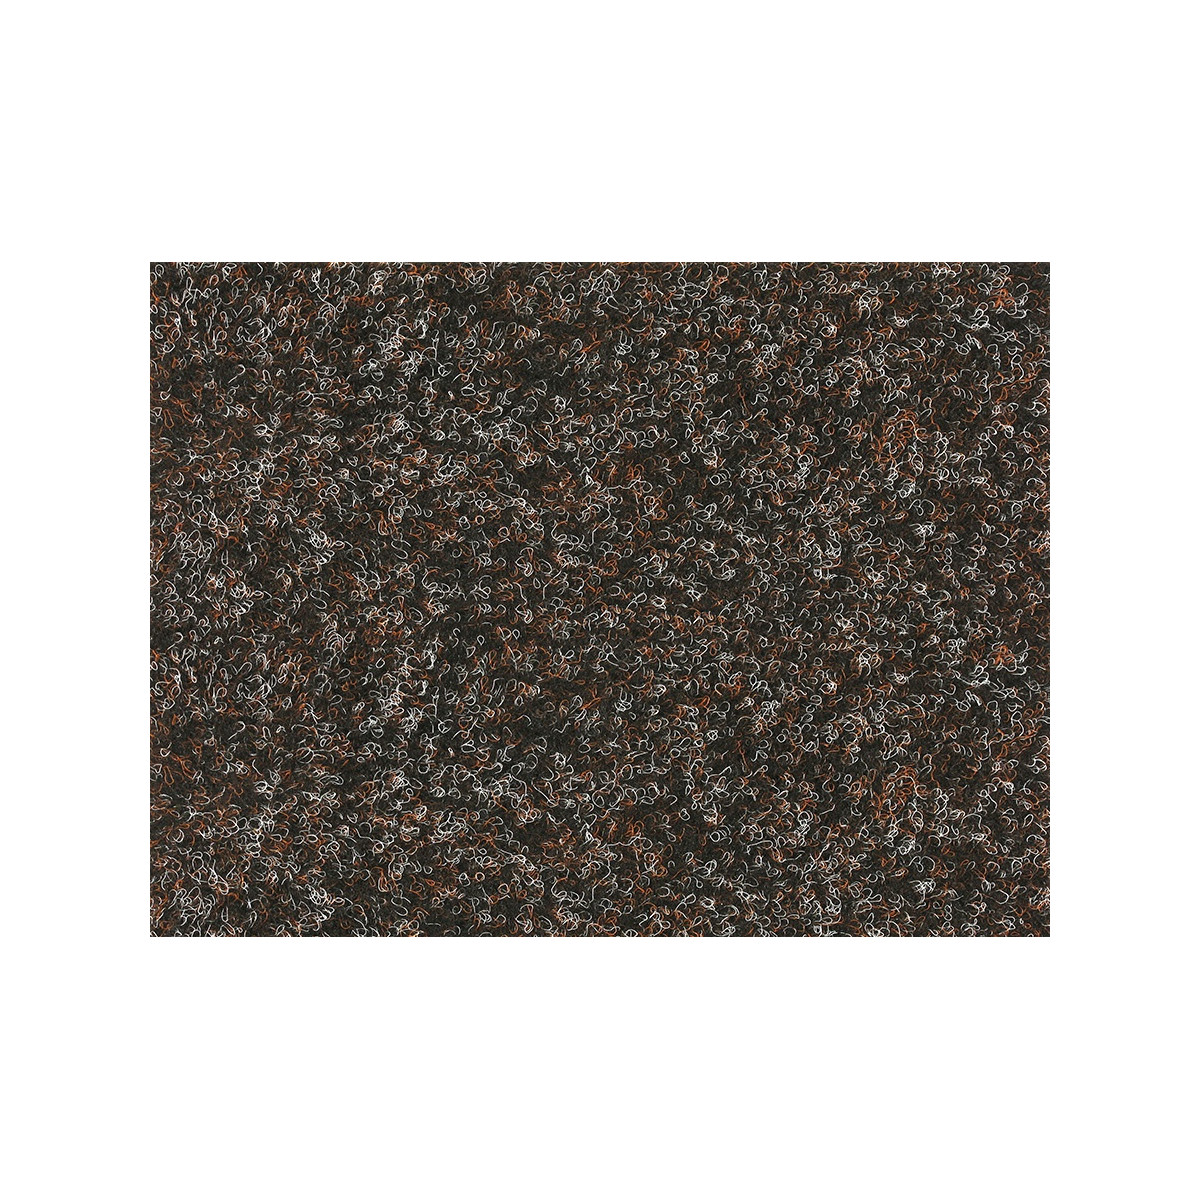 Metrážny koberec New Orleans 770 s podkladem resine